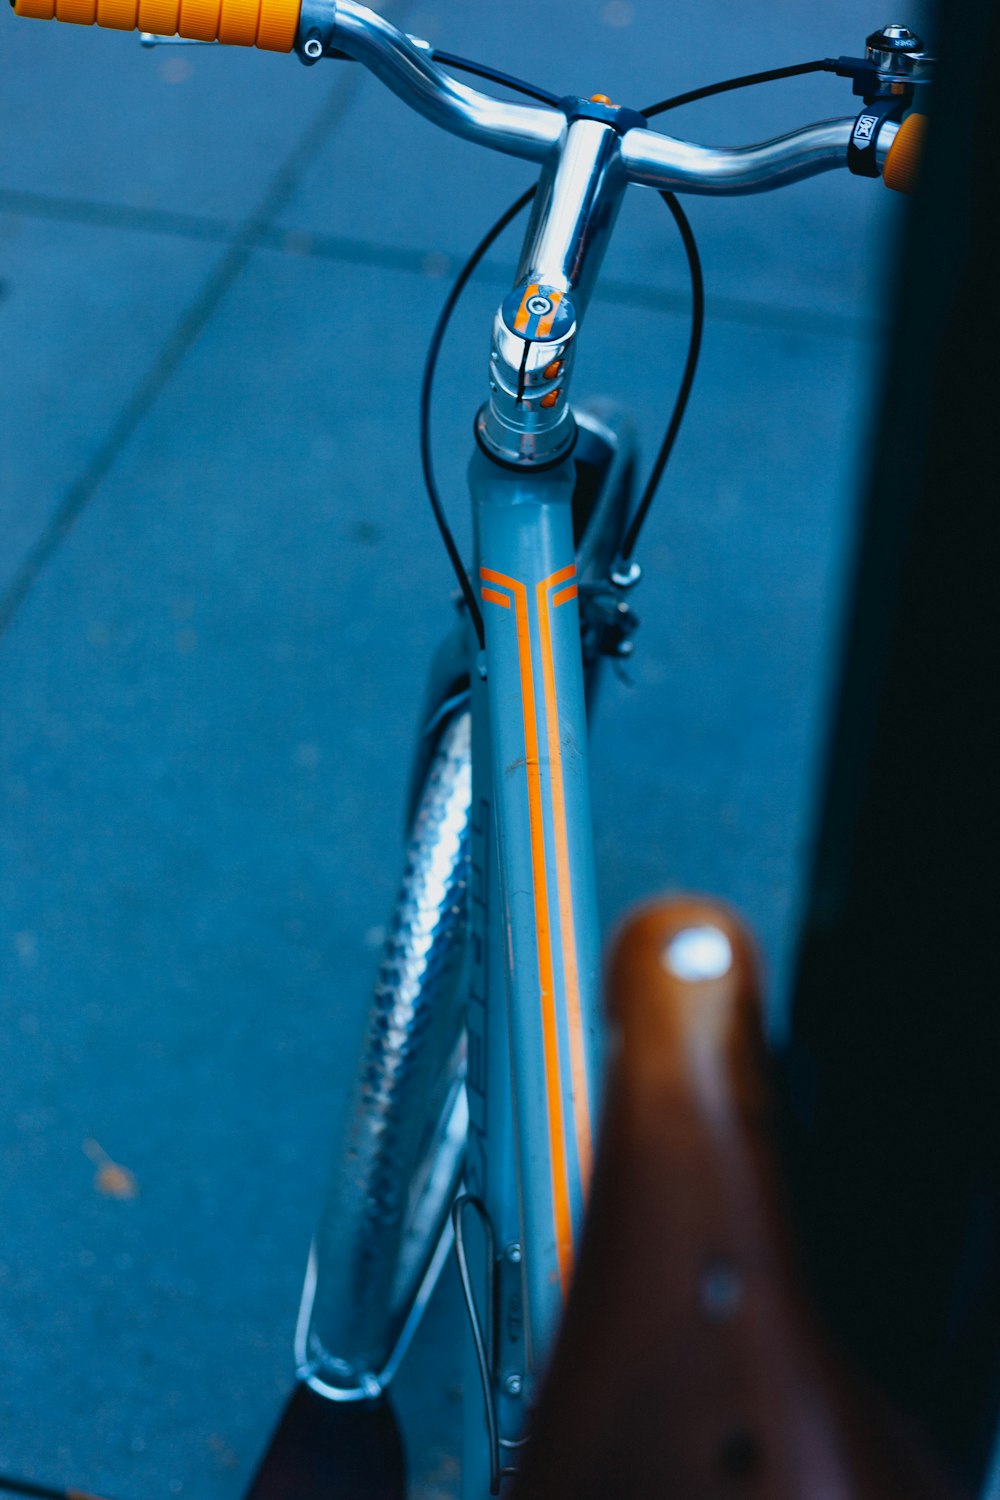 Photographie à mise au point peu profonde du cadre de vélo turquoise